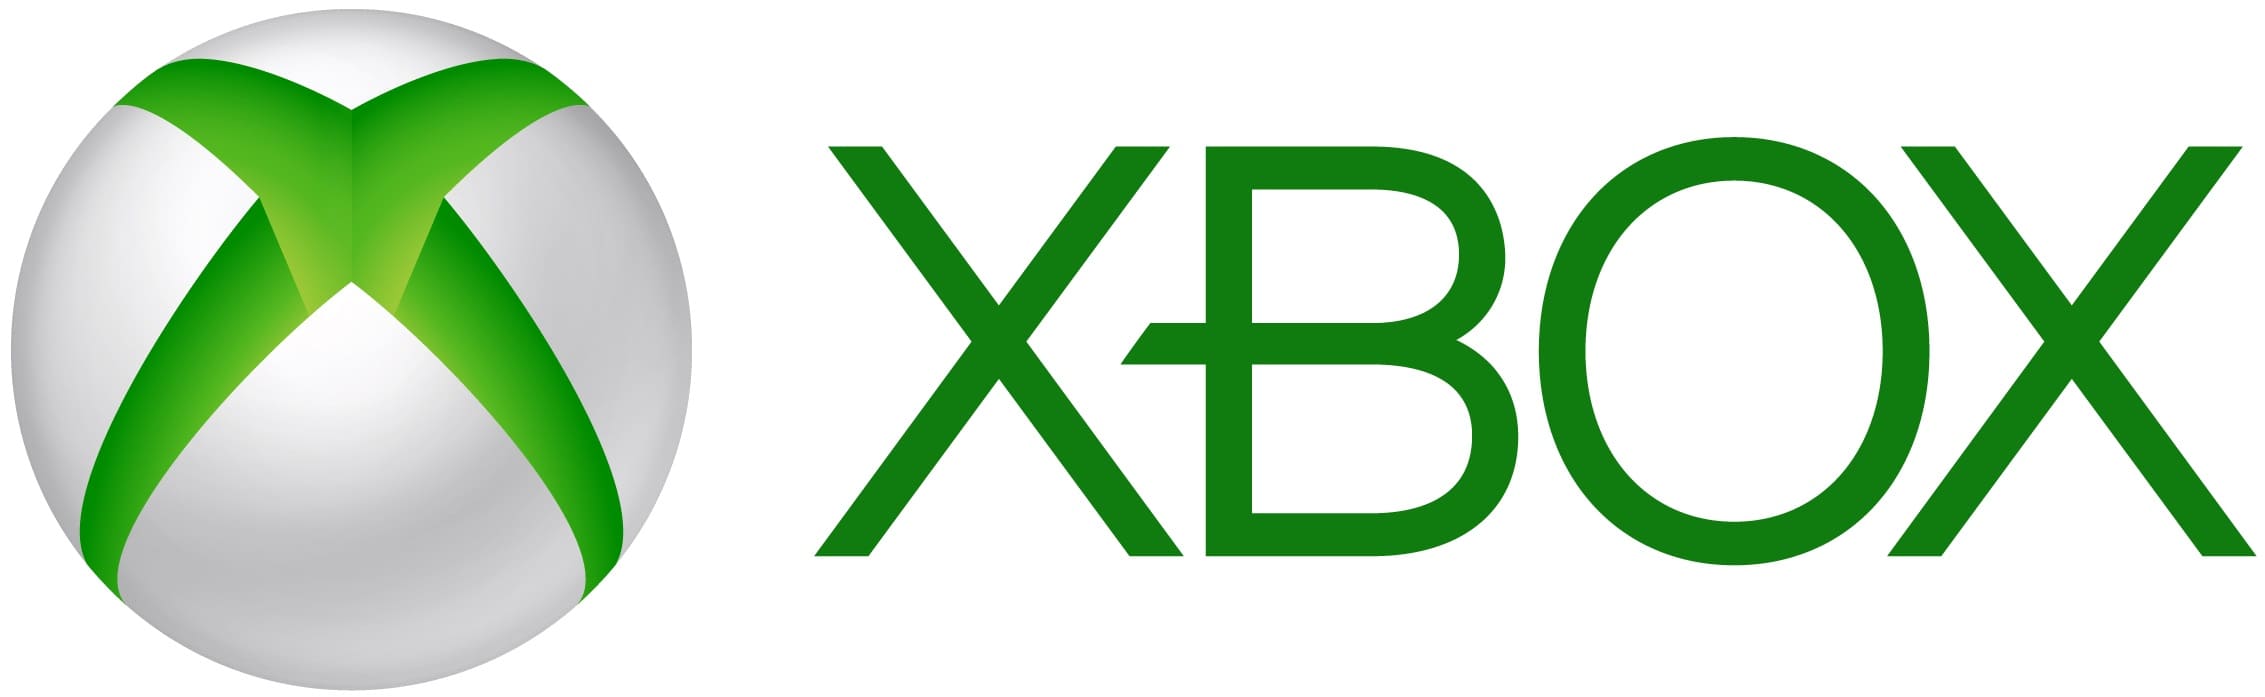 Resultados financieros de Xbox